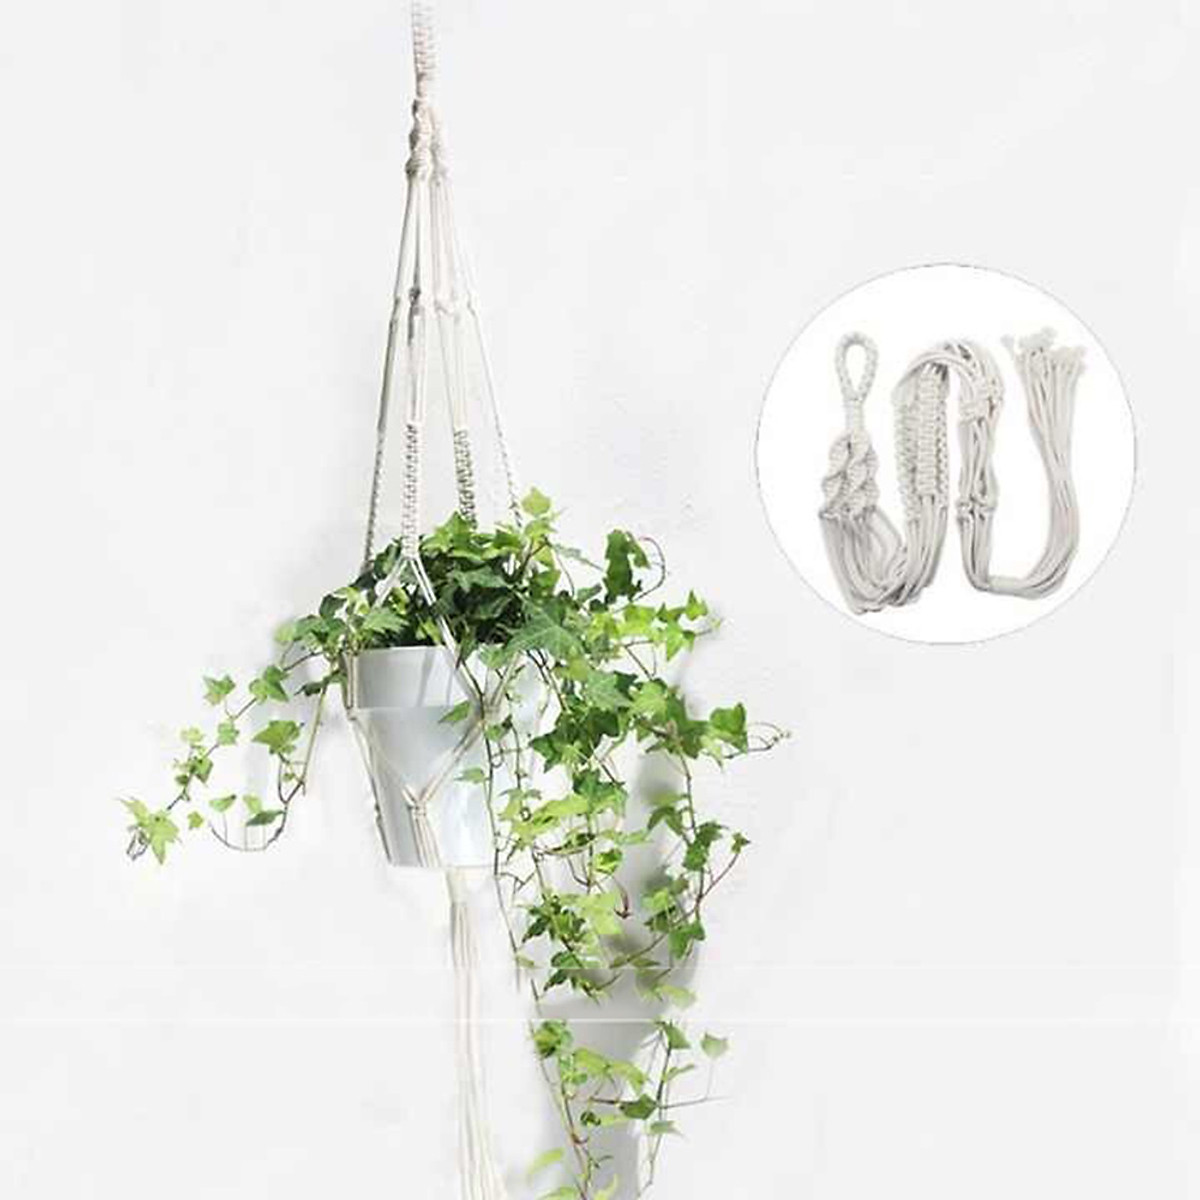 Dây treo chậu cây cảnh lọ hoa dây trang trí phối màu - chất liệu Cotton tự nhiên thân thiện với môi trường